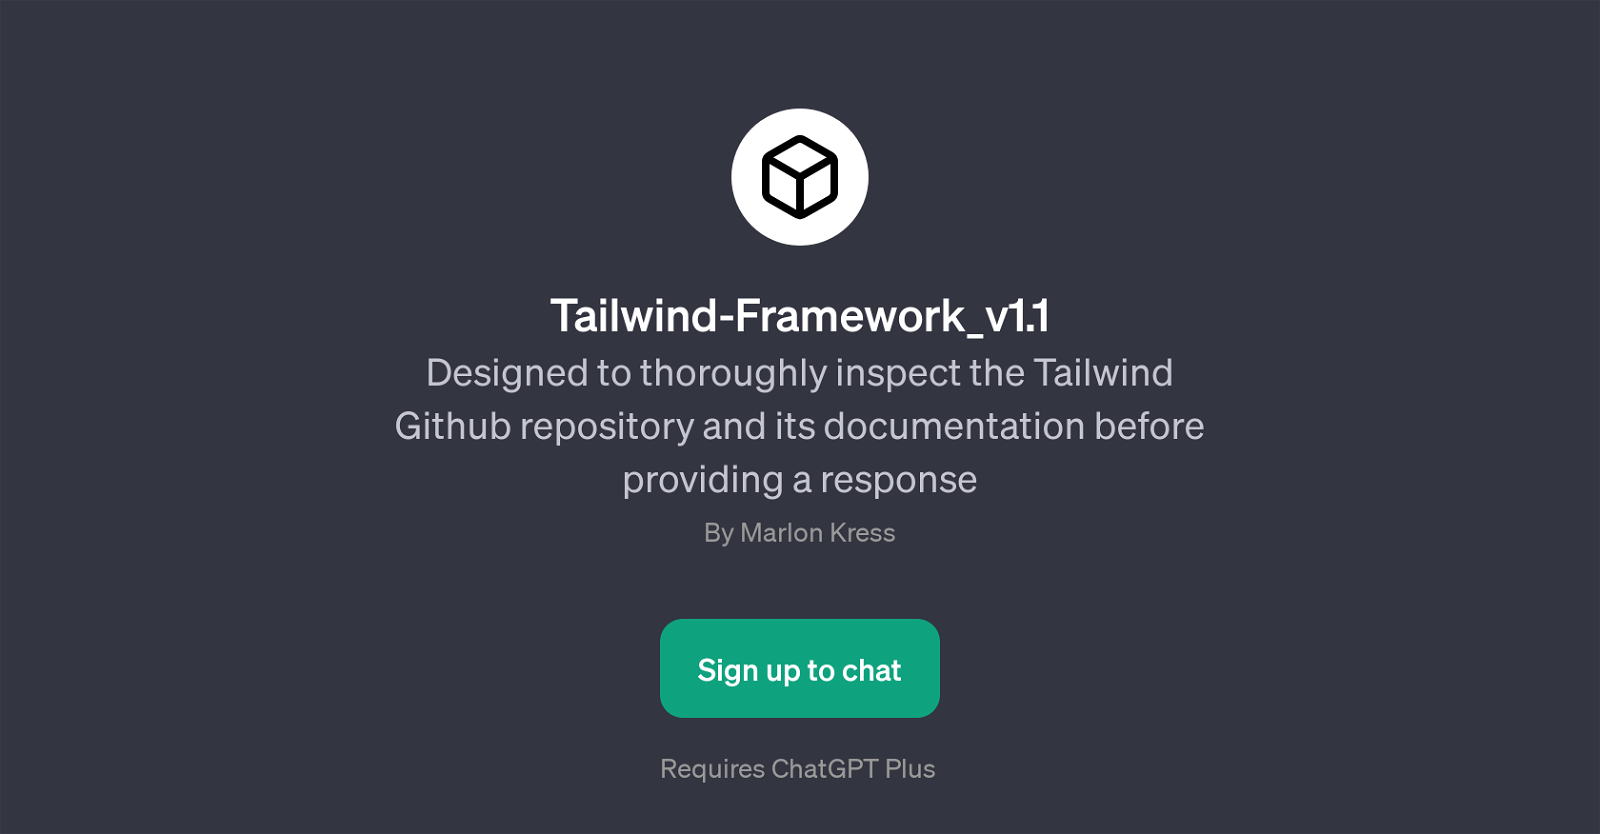 Tailwind-Framework_v1.1 website